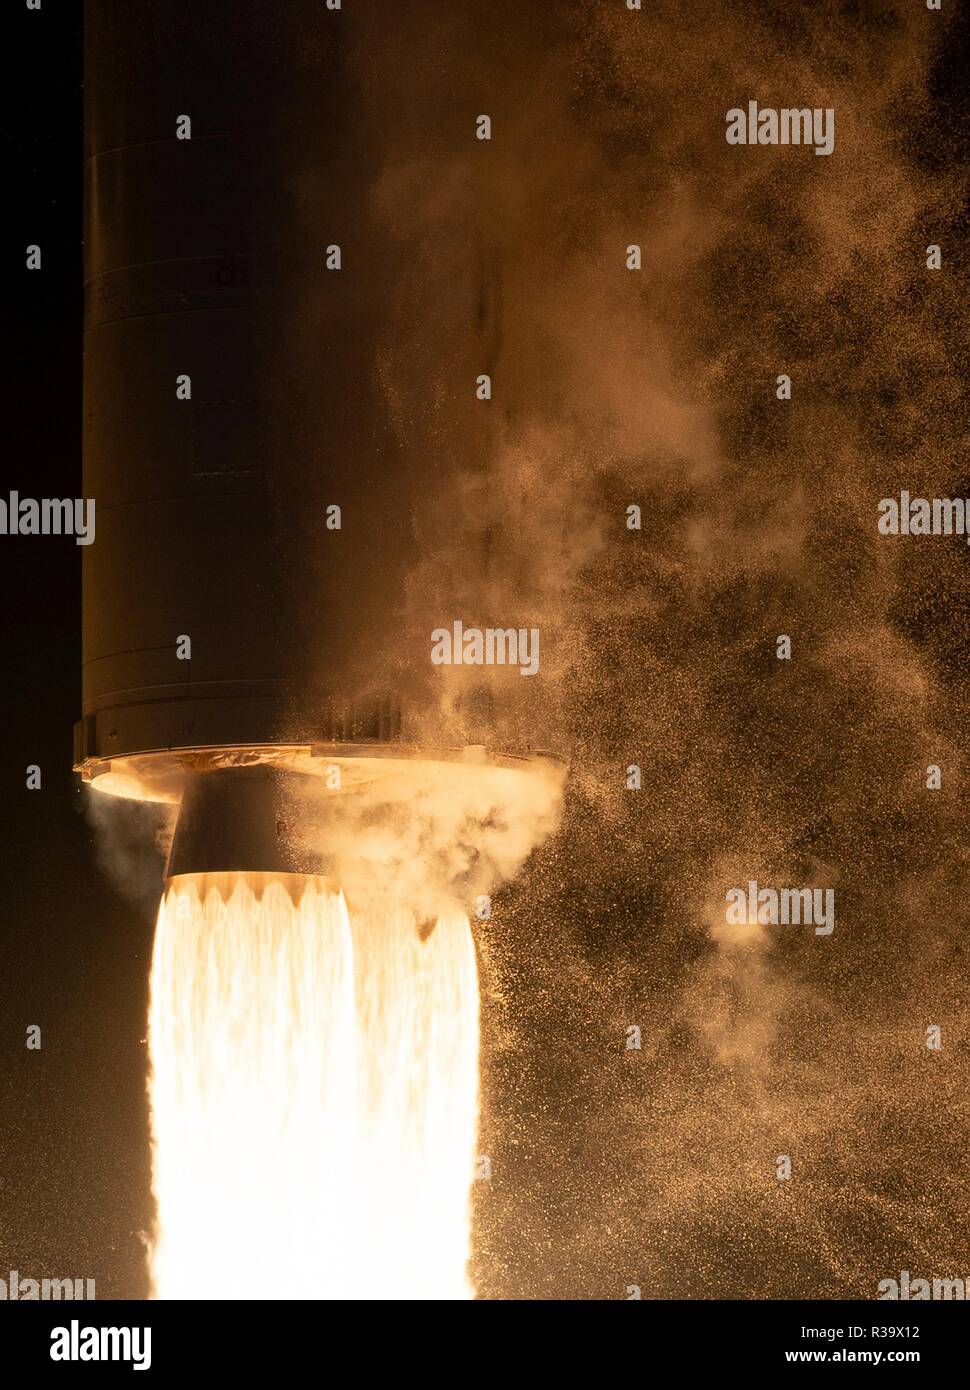 La Northrop Grumman llevando el cohete Antares Cygnus reabastecimiento lanzamientos espaciales de Pad-0A en la NASA Wallops Flight Facility el 17 de noviembre de 2018, en la Isla de Wallops, Virginia. La carga comercial misión de reabastecimiento de la estación espacial internacional ofrecerá unos 7.400 libras de la ciencia y la investigación, de la tripulación y suministros de hardware al laboratorio orbital y su tripulación. Foto de stock